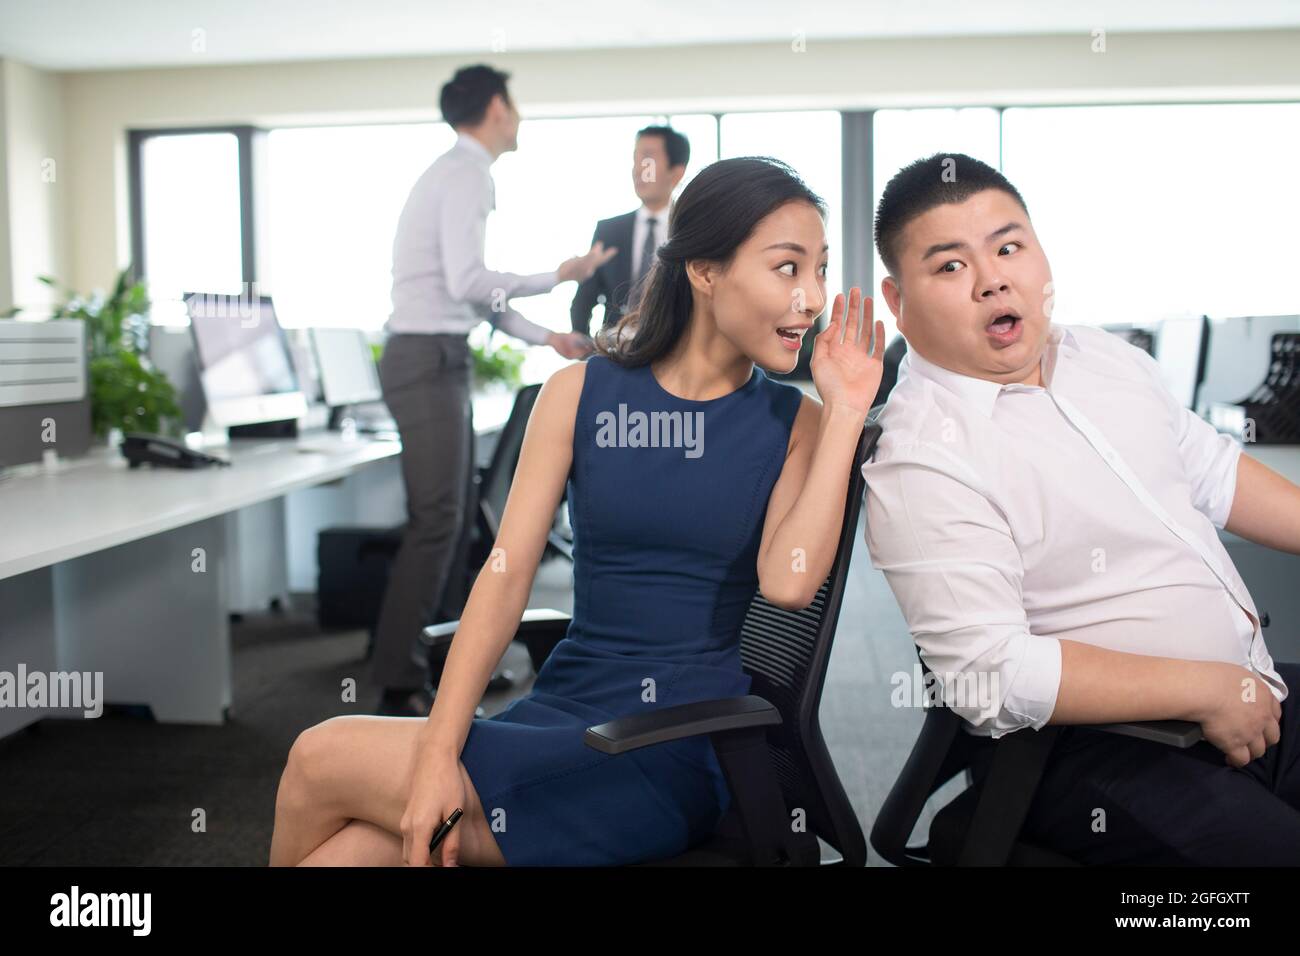 Business people talking gossip in office Stock Photo